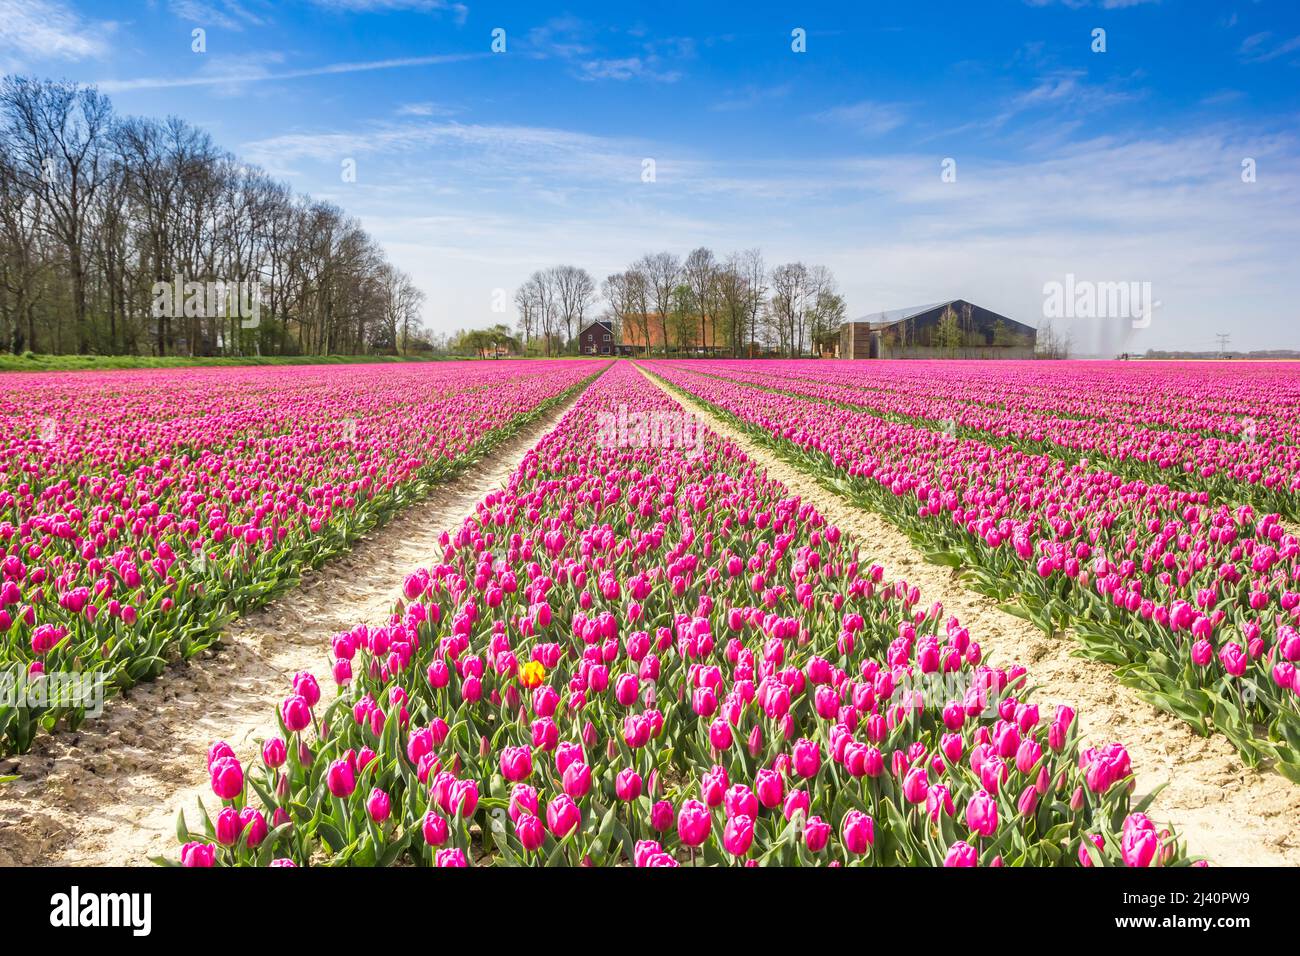 Campo de tulipanes púrpura frente a una granja en Noordoostpolder, Países Bajos Foto de stock